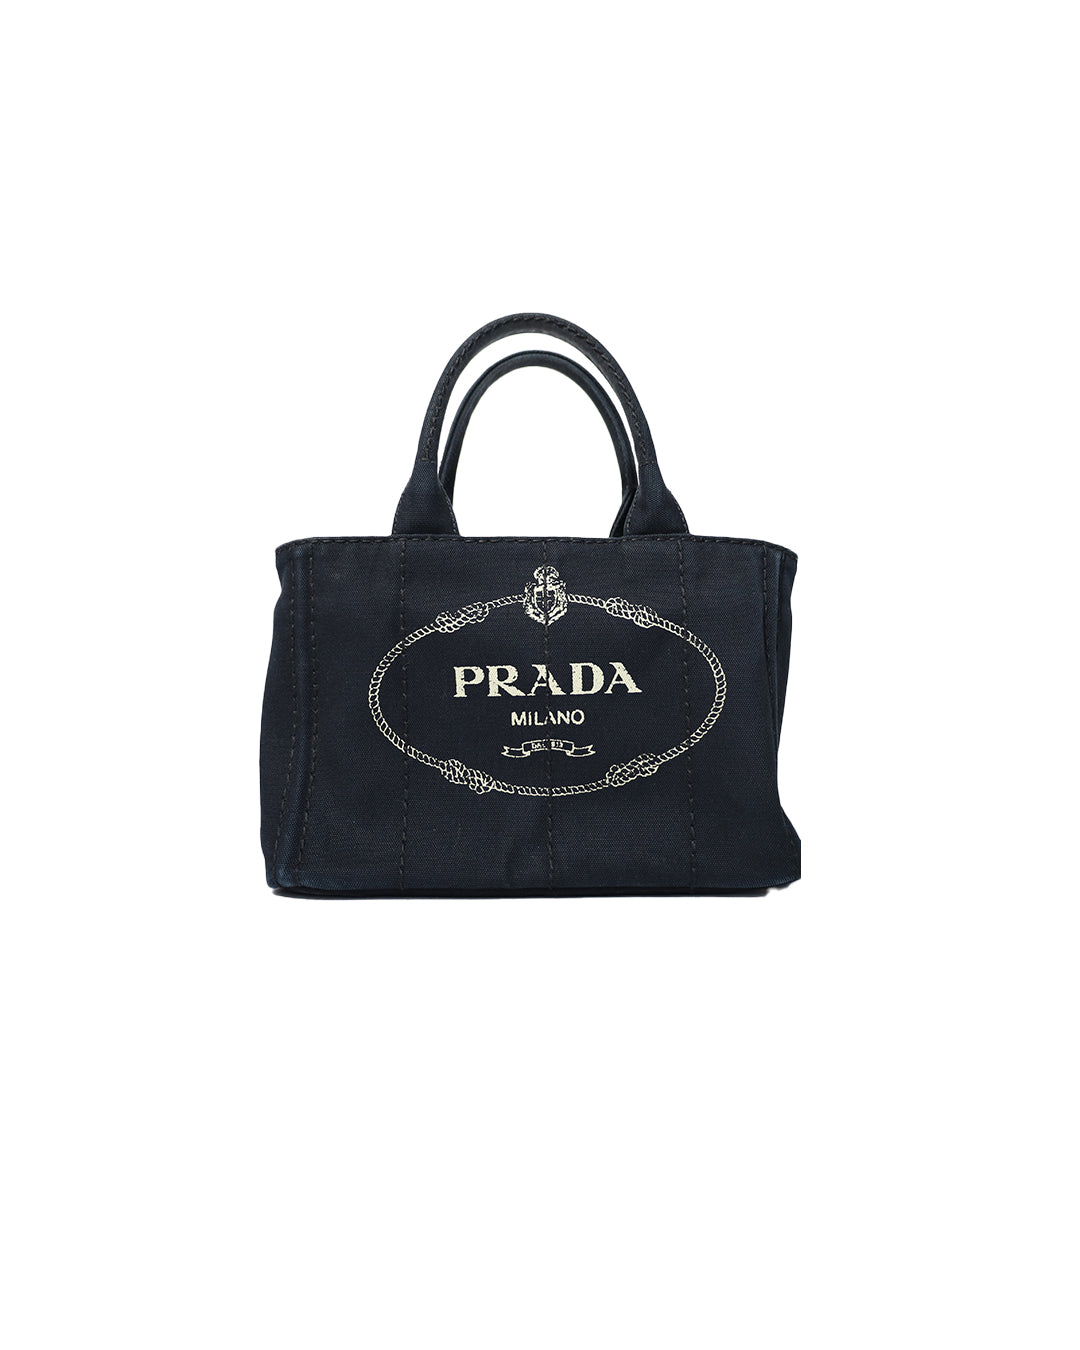 No.3562-Louis Vuitton Monogram Glace Shelton Handbag – Gallery Luxe